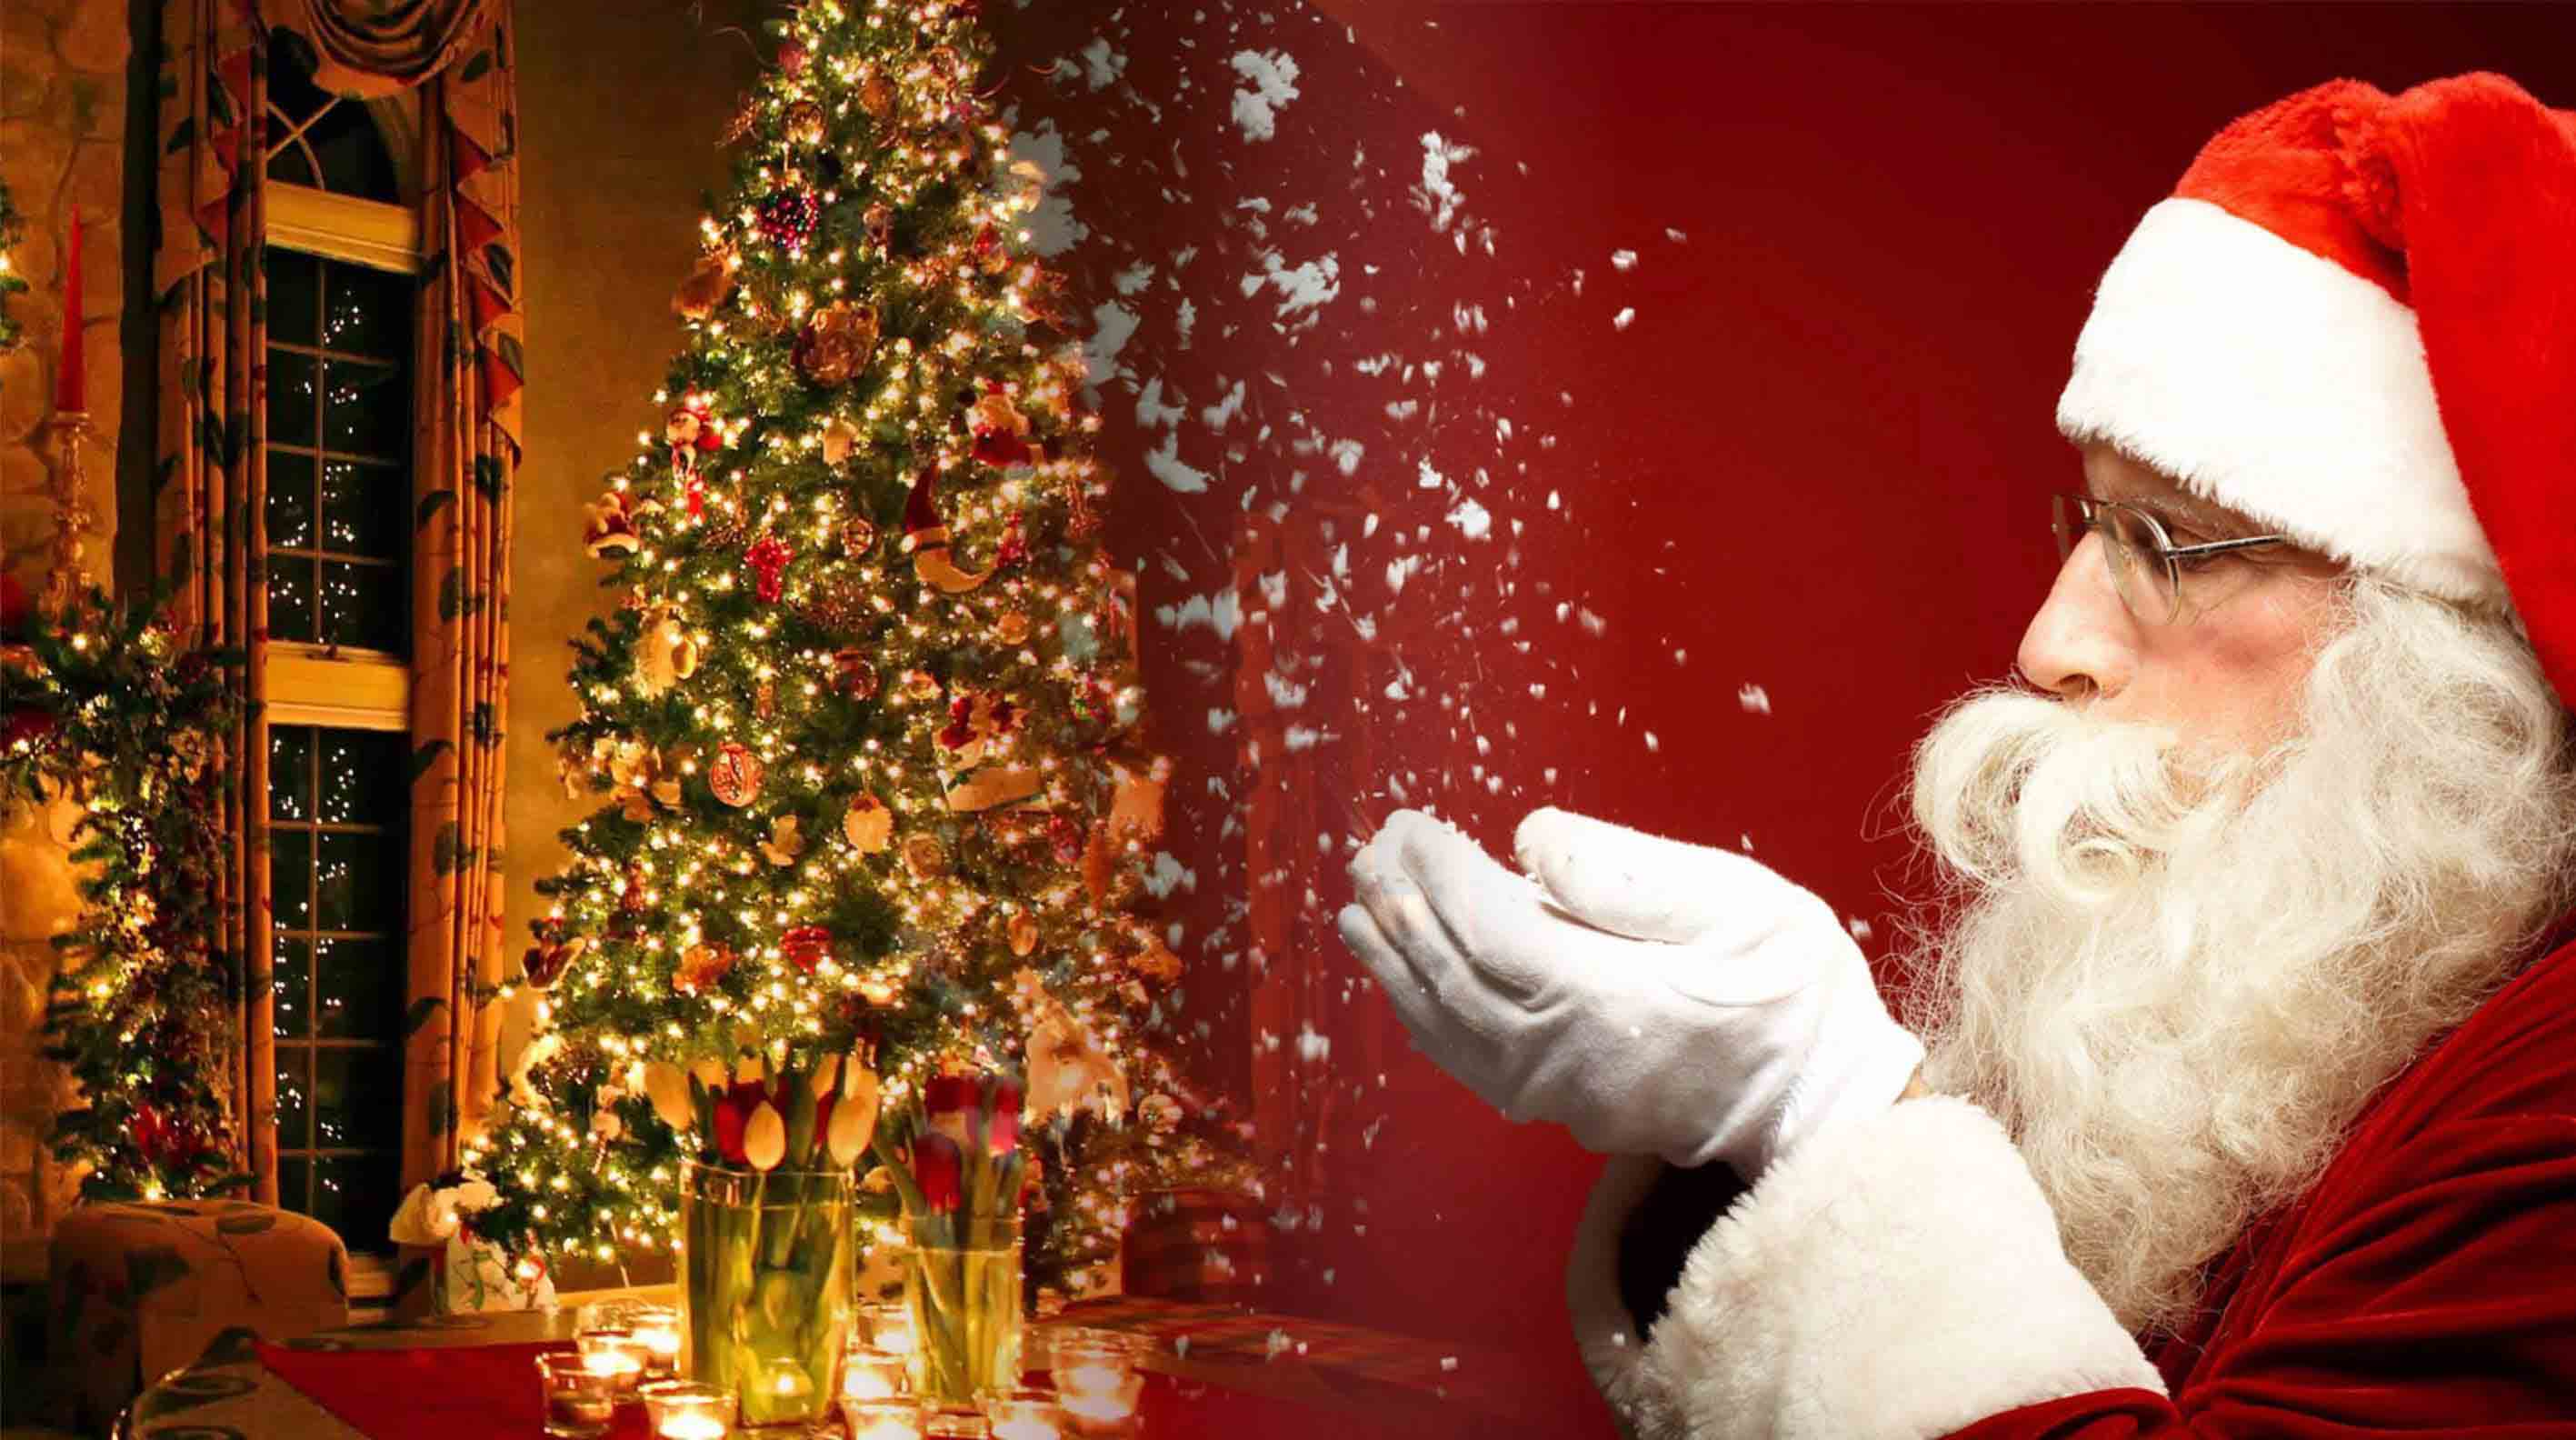 Stt Giáng Sinh bá đạo: Tìm hiểu về những Stt Giáng Sinh bá đạo nhất để làm mới trang cá nhân của bạn trên mạng xã hội. Những câu nói hài hước, sâu sắc và đầy chất hứa hẹn sẽ đưa bạn đến một mùa Giáng Sinh đầy thú vị.